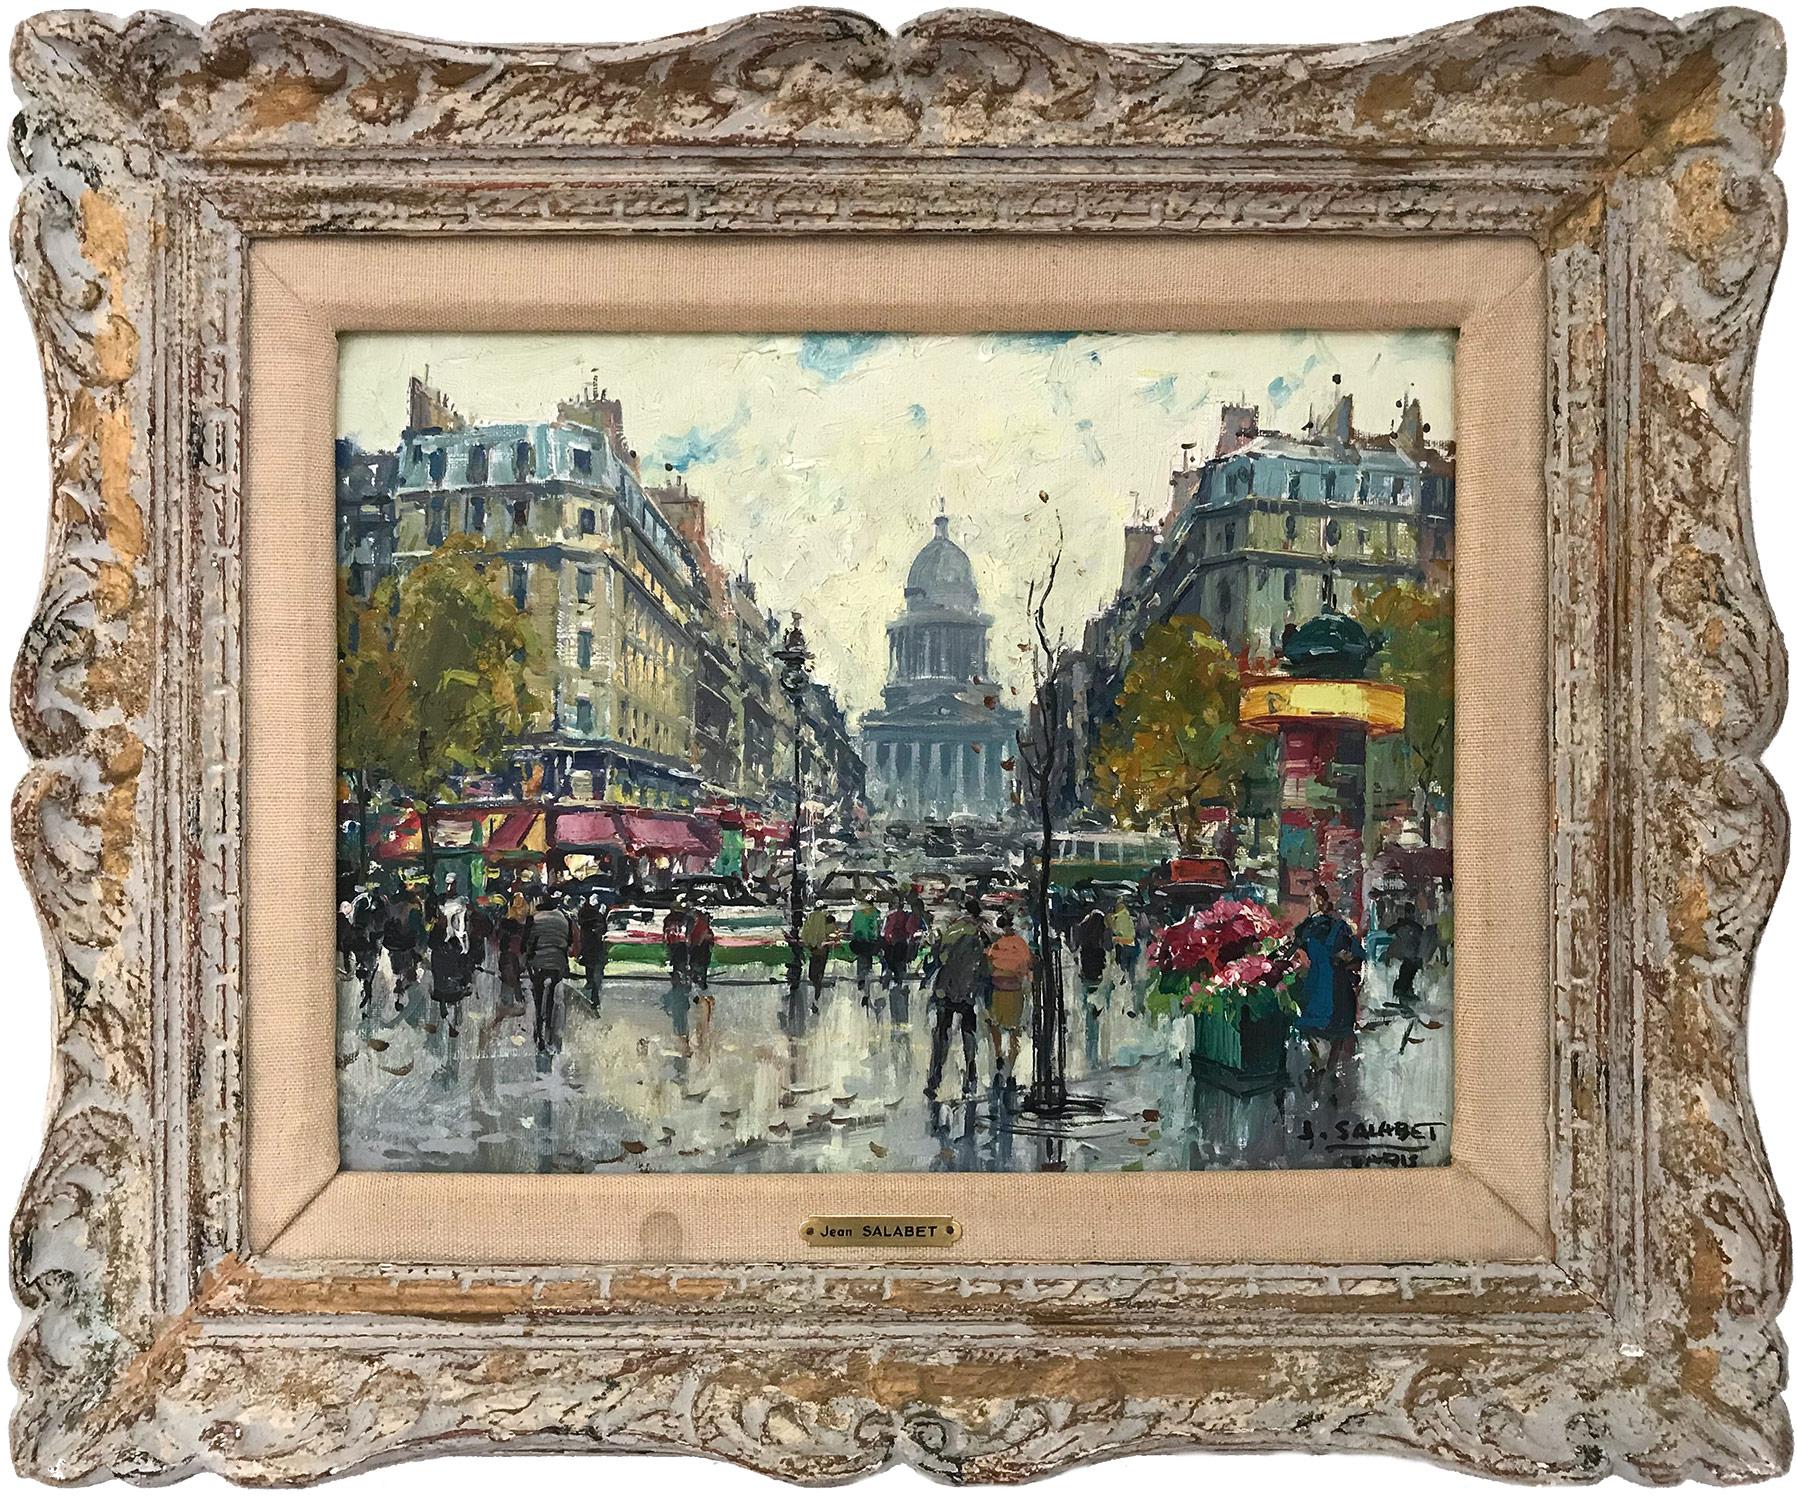 Jean Salabet Figurative Painting - "Cafés et Panthéon" Impressionist Parisian Street Scene Oil Painting on Canvas